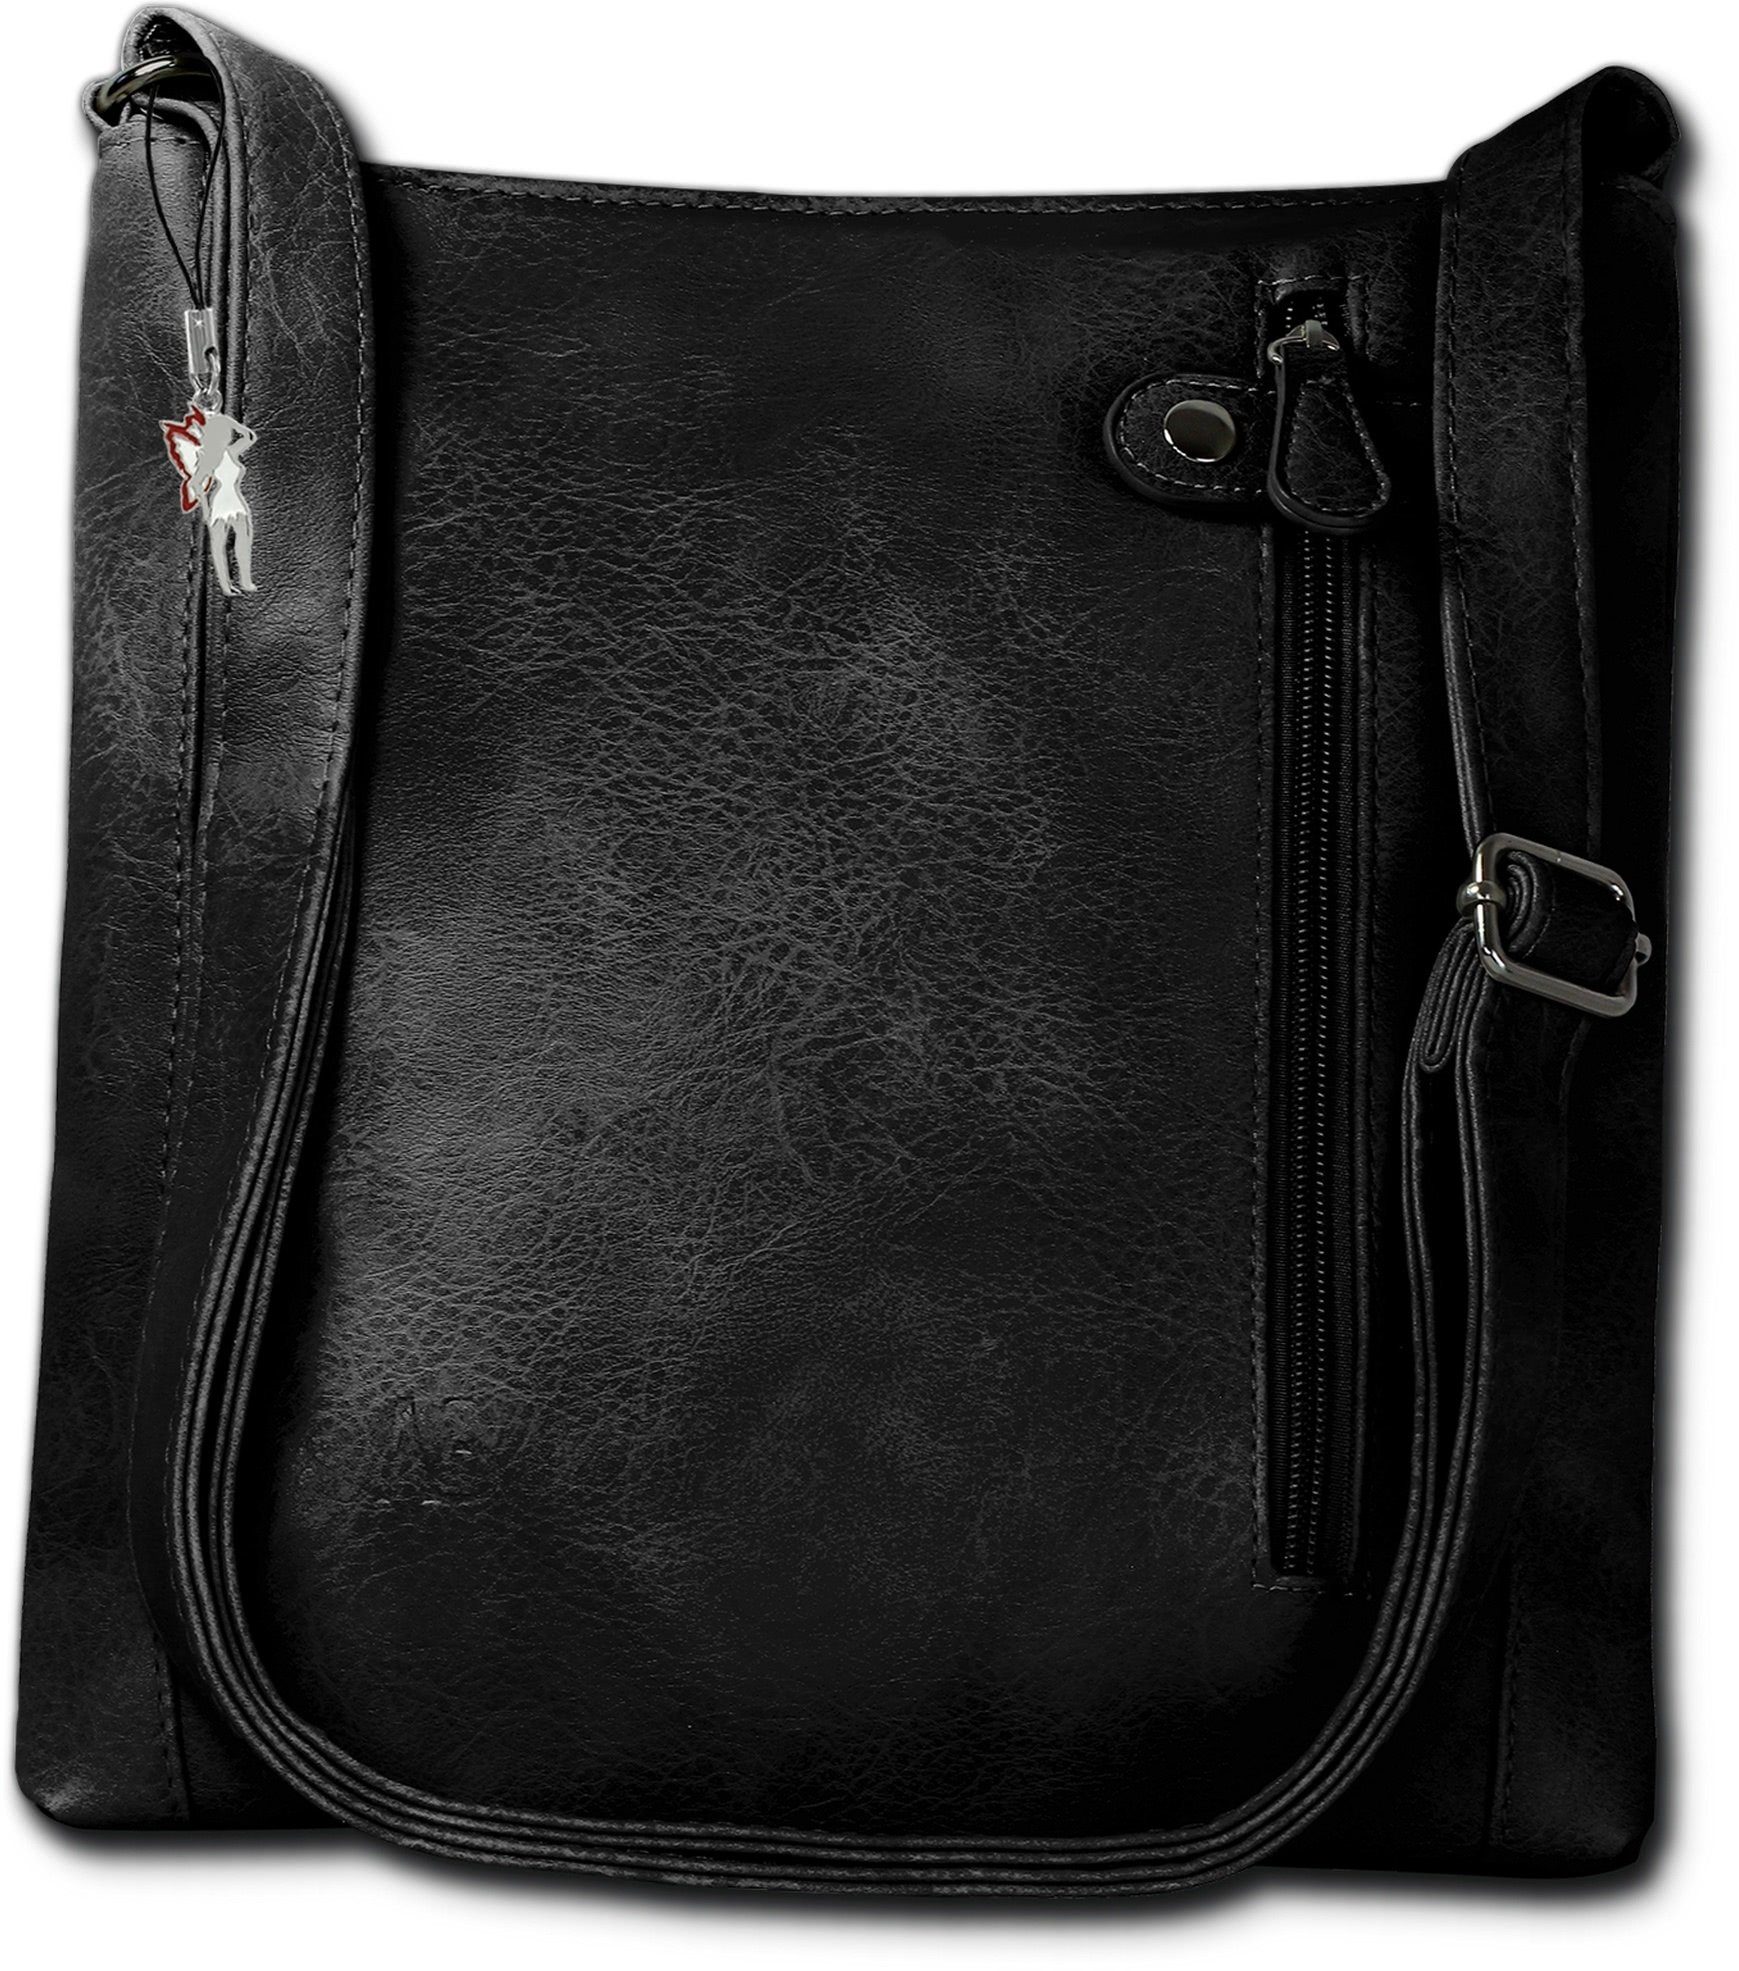 New Bags Umhängetasche NewBags Umhängetasche Handtasche black  (Umhängetasche, Umhängetasche), Damen Handtasche, Umhängetasche schwarz,  Größe ca. 27,5cm, halbrund